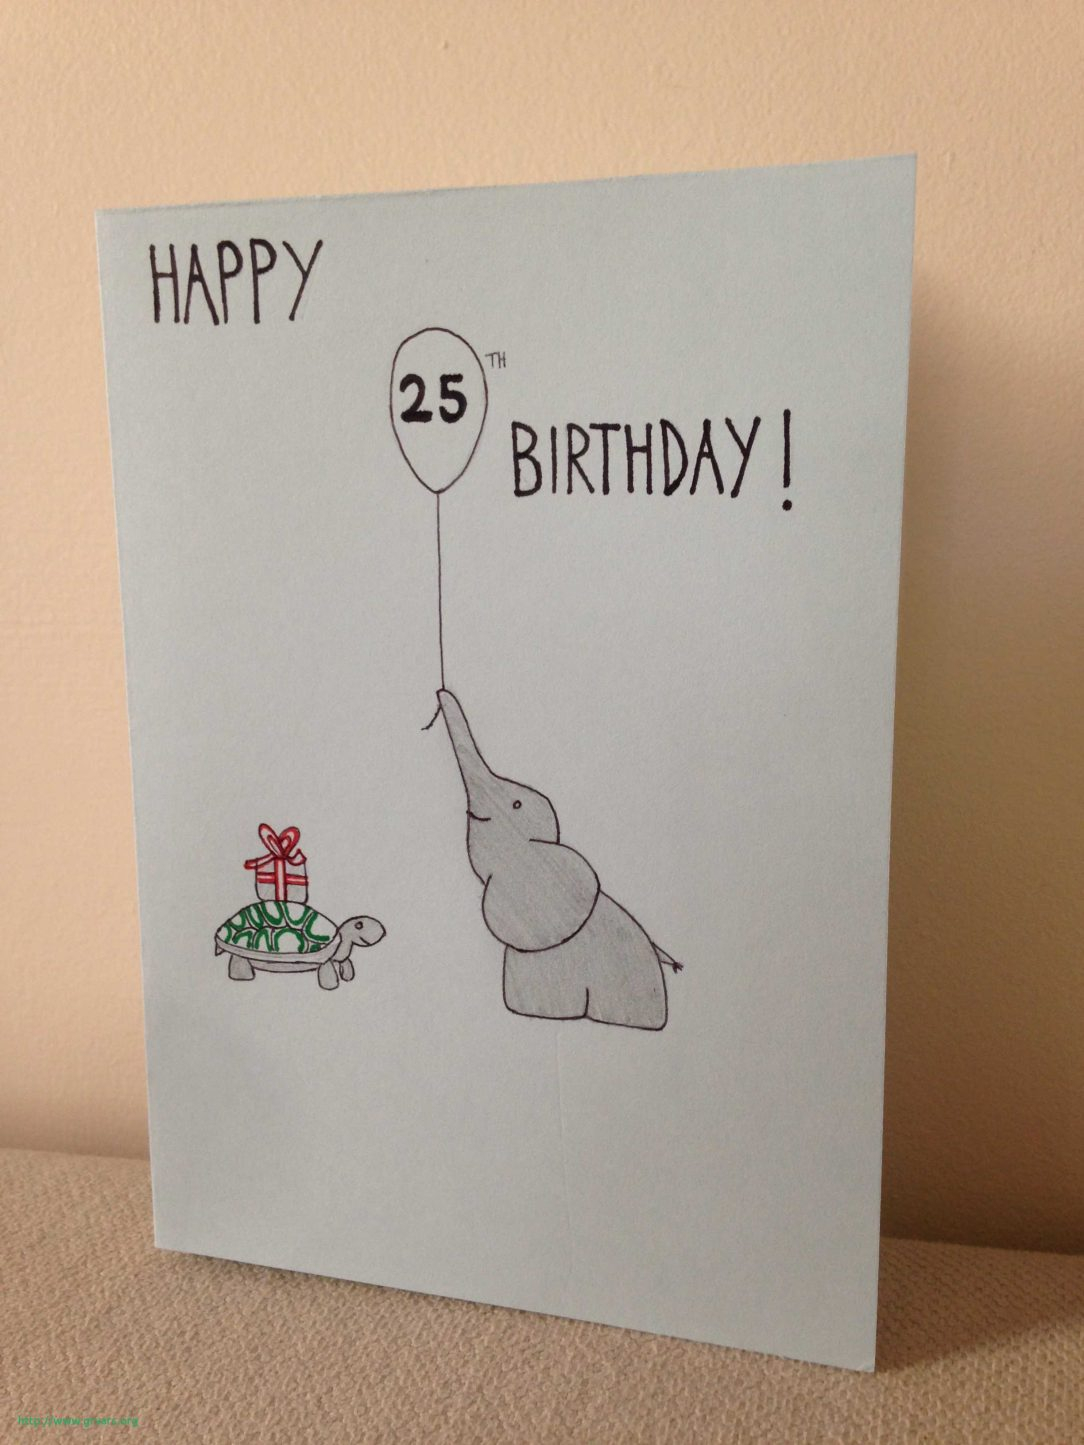 Dad Birthday Card Ideas Cute Dad Birthday Card Ideas For From Preschooler Wording Text Diy A